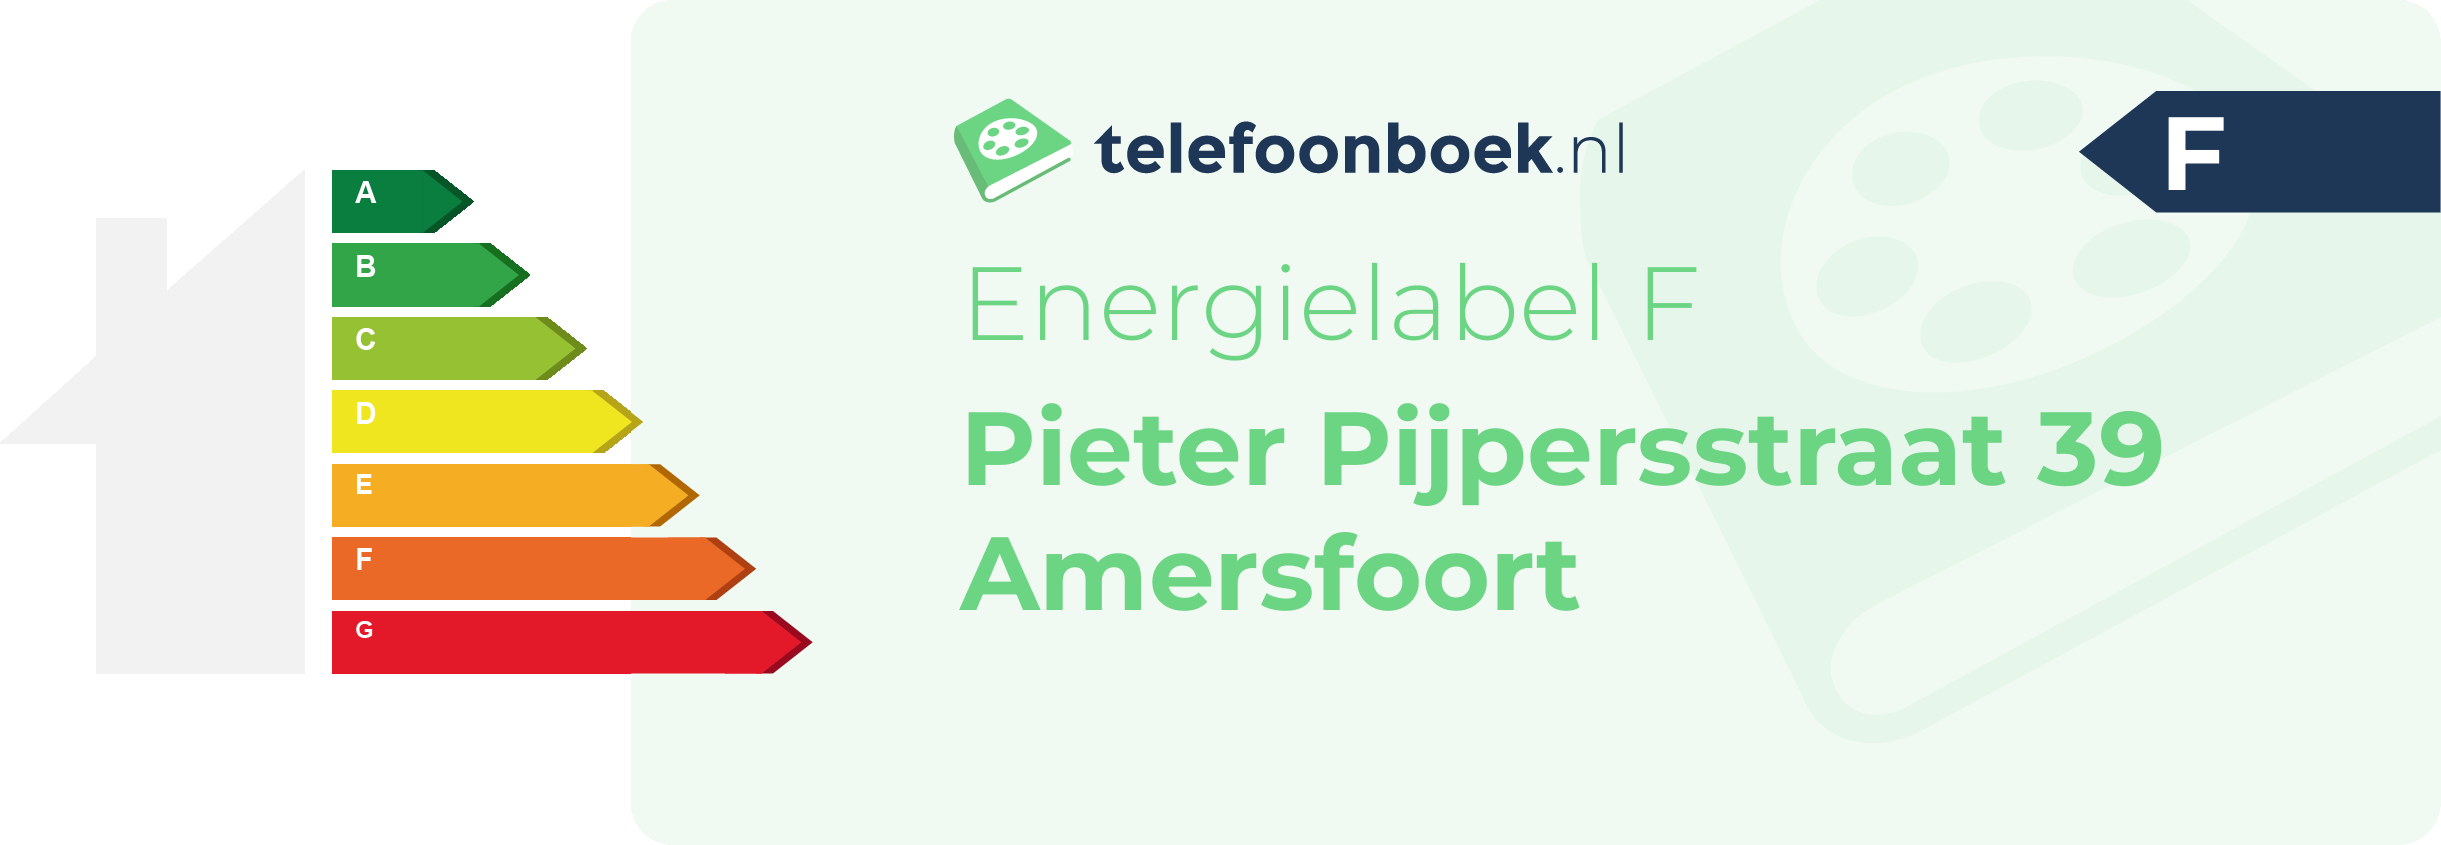 Energielabel Pieter Pijpersstraat 39 Amersfoort